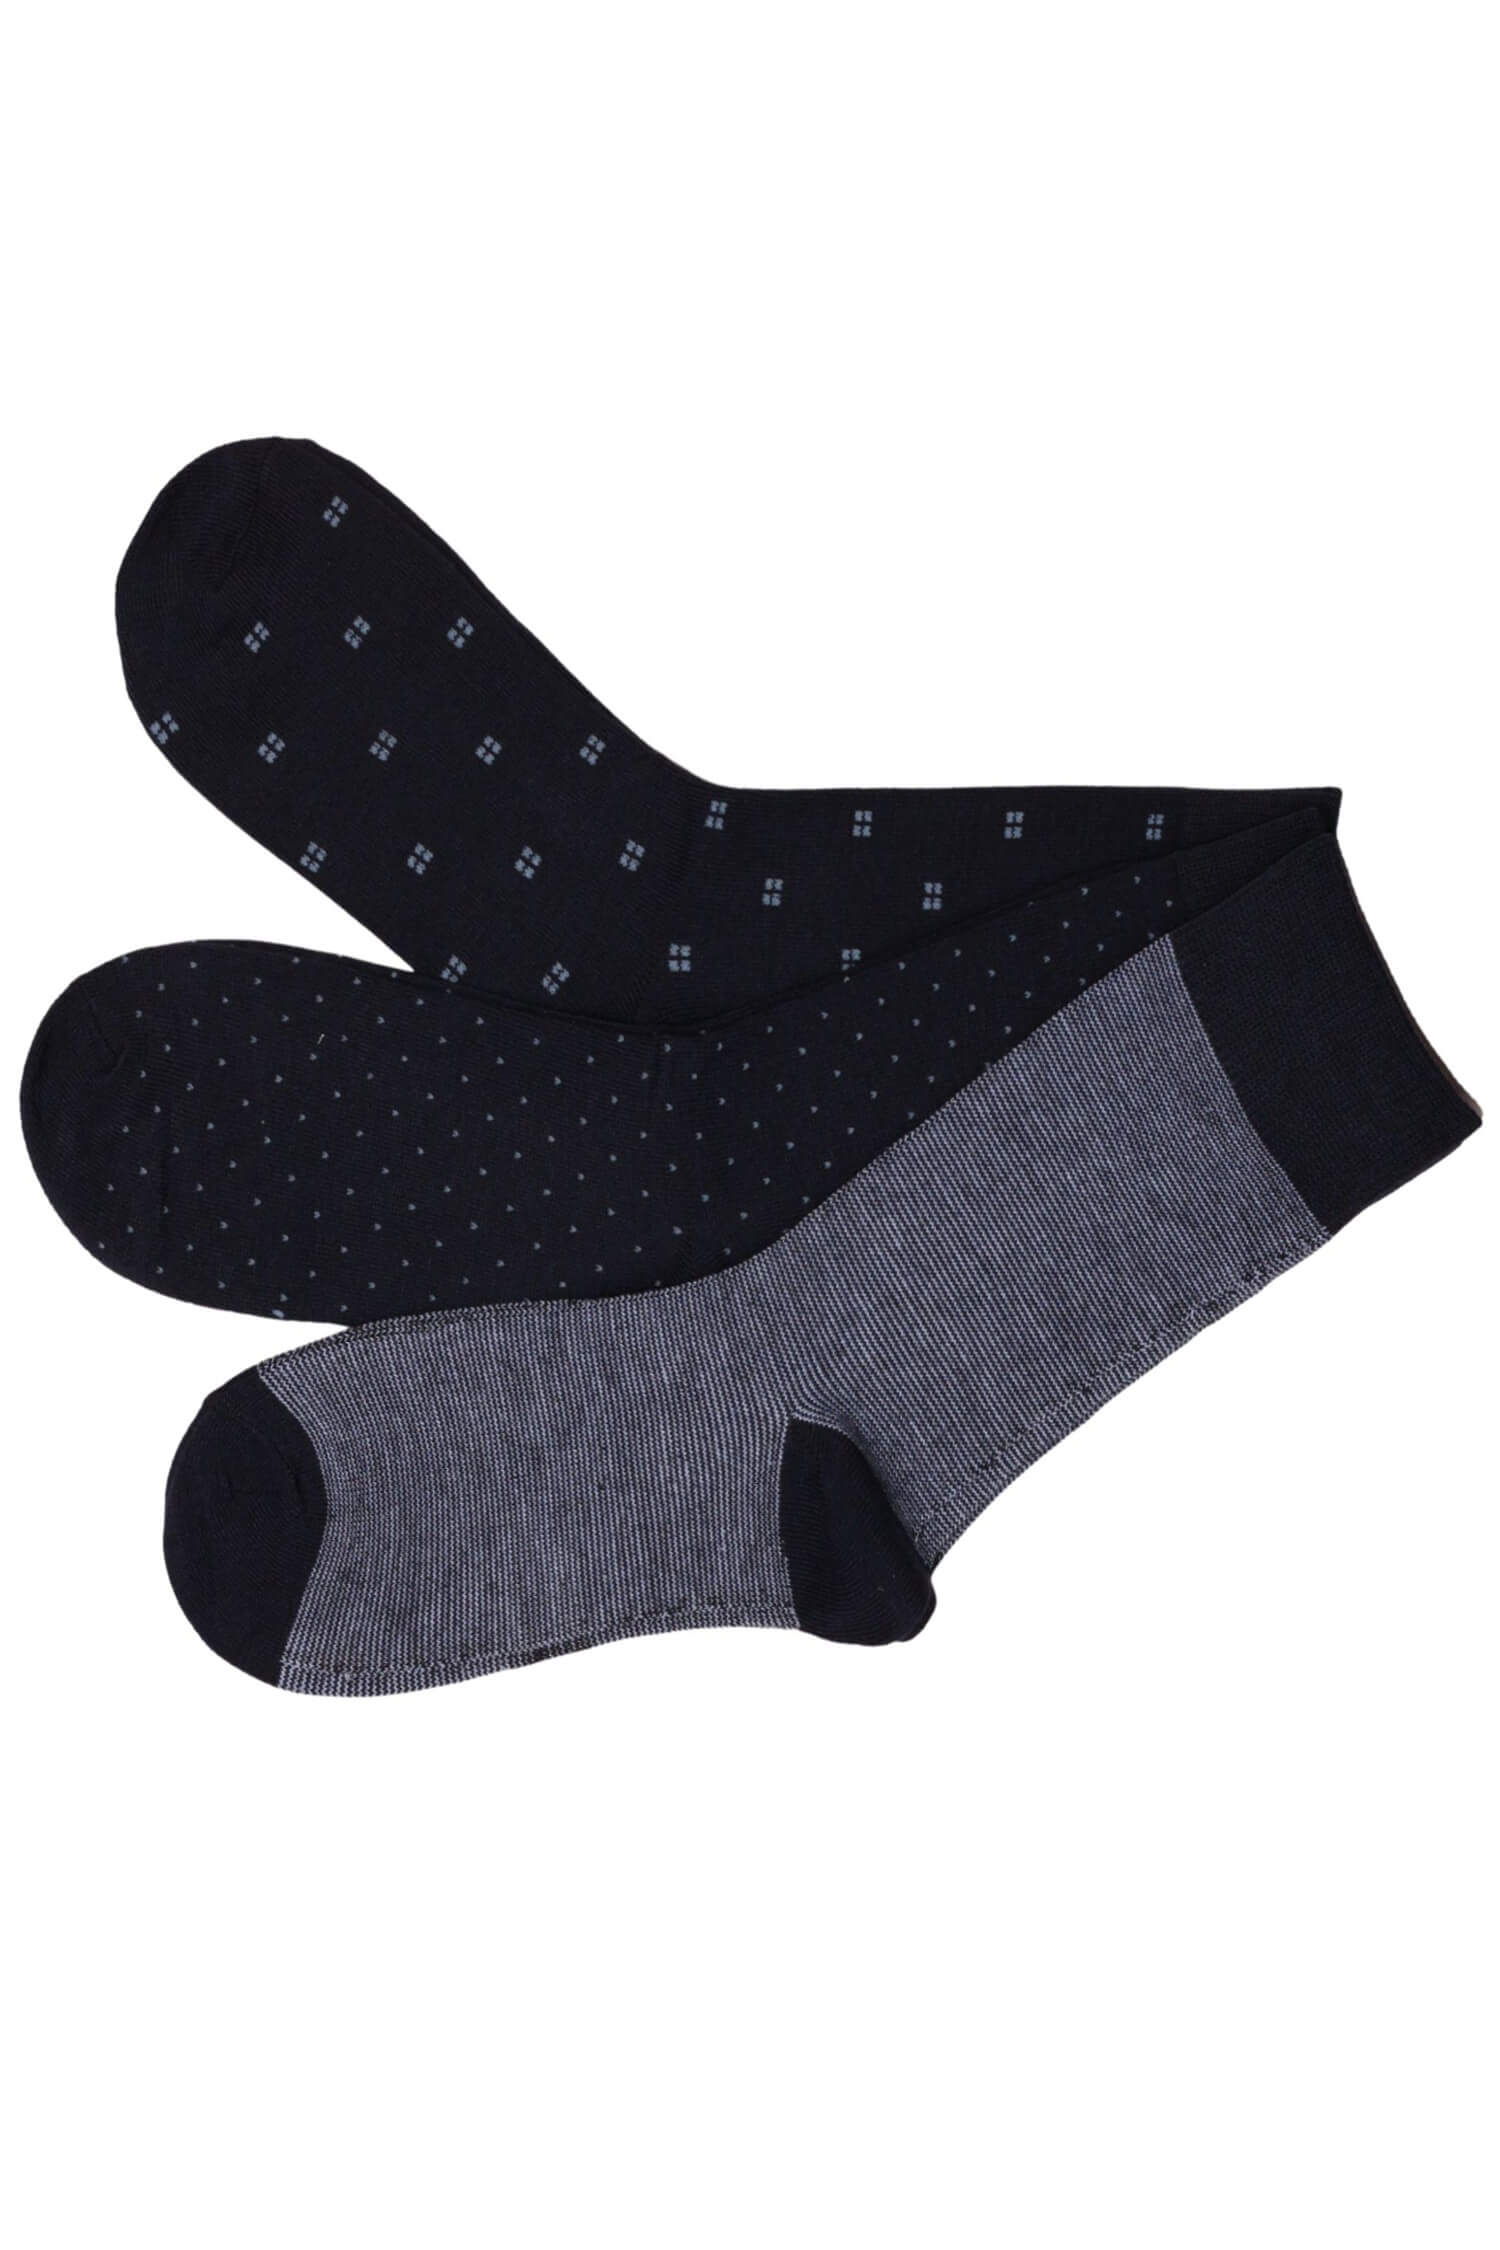 Pánské vysoké ponožky bavlna - 3 páry 43-46 vícebarevná